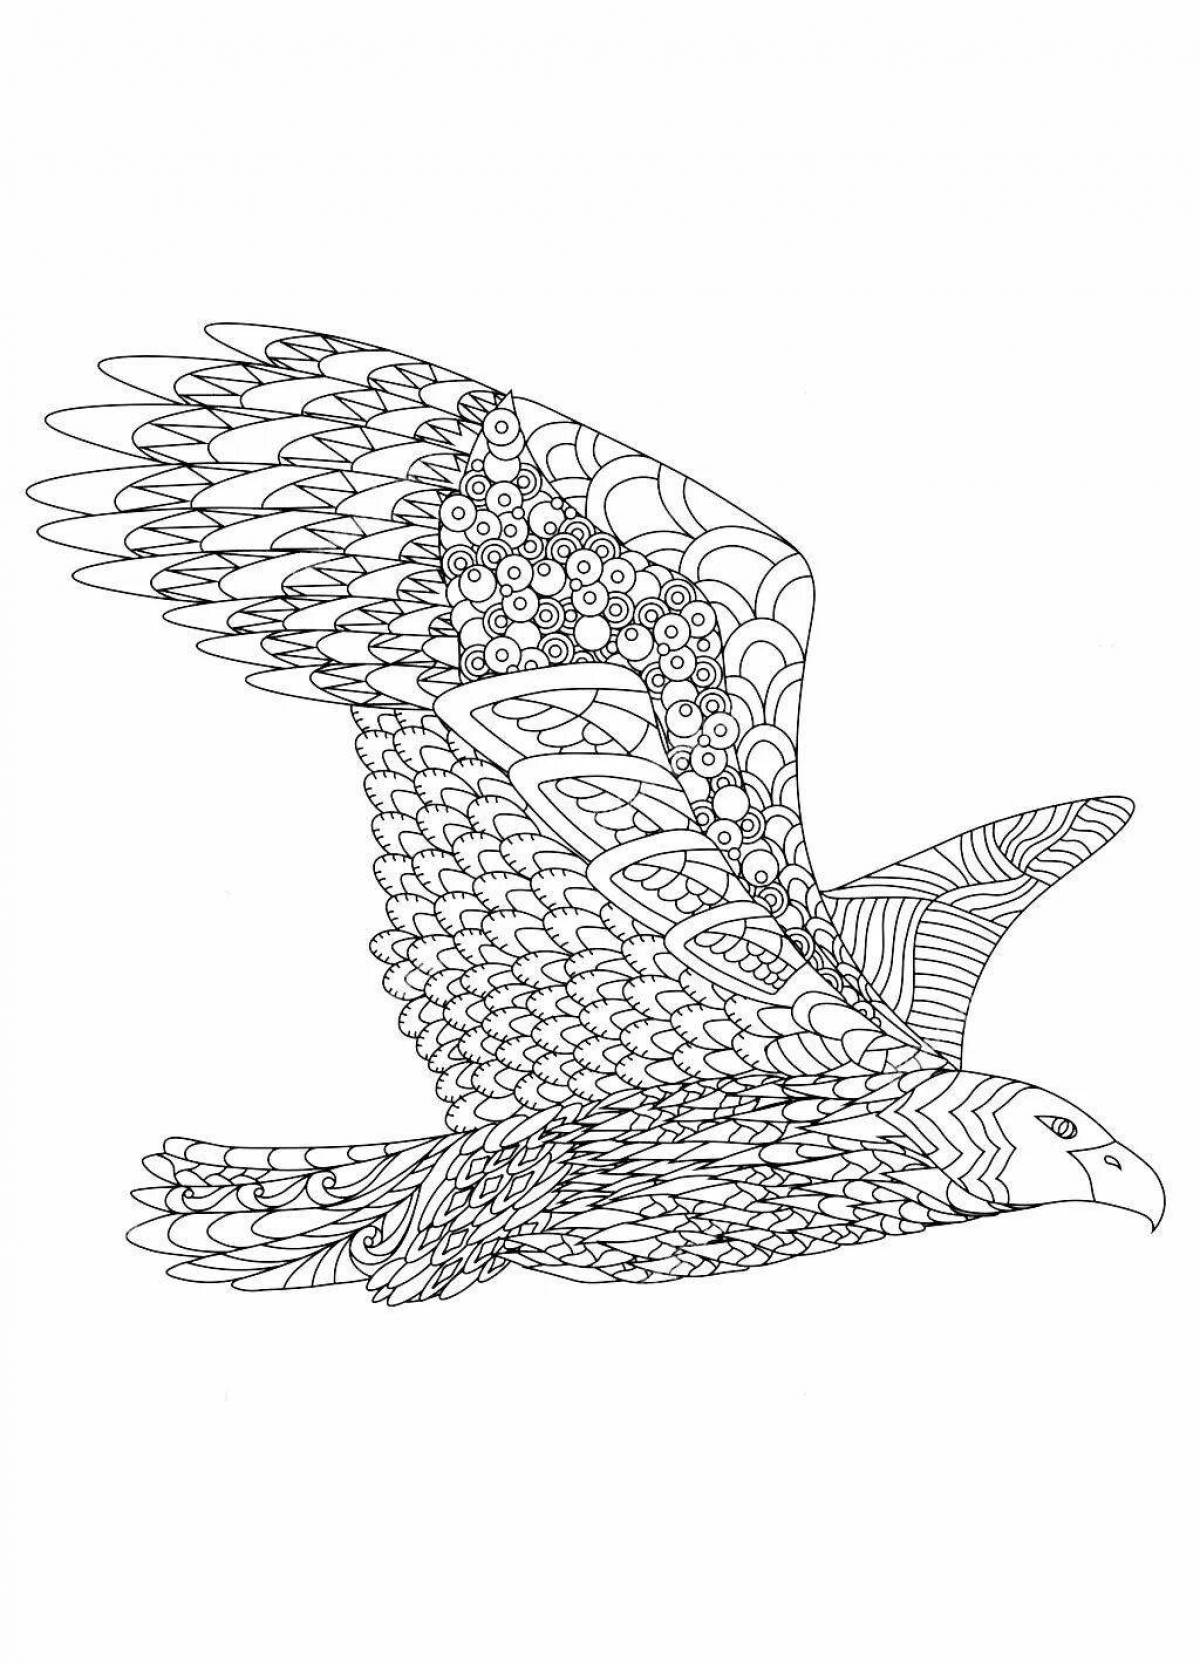 Изящная раскраска антистрессовый орел